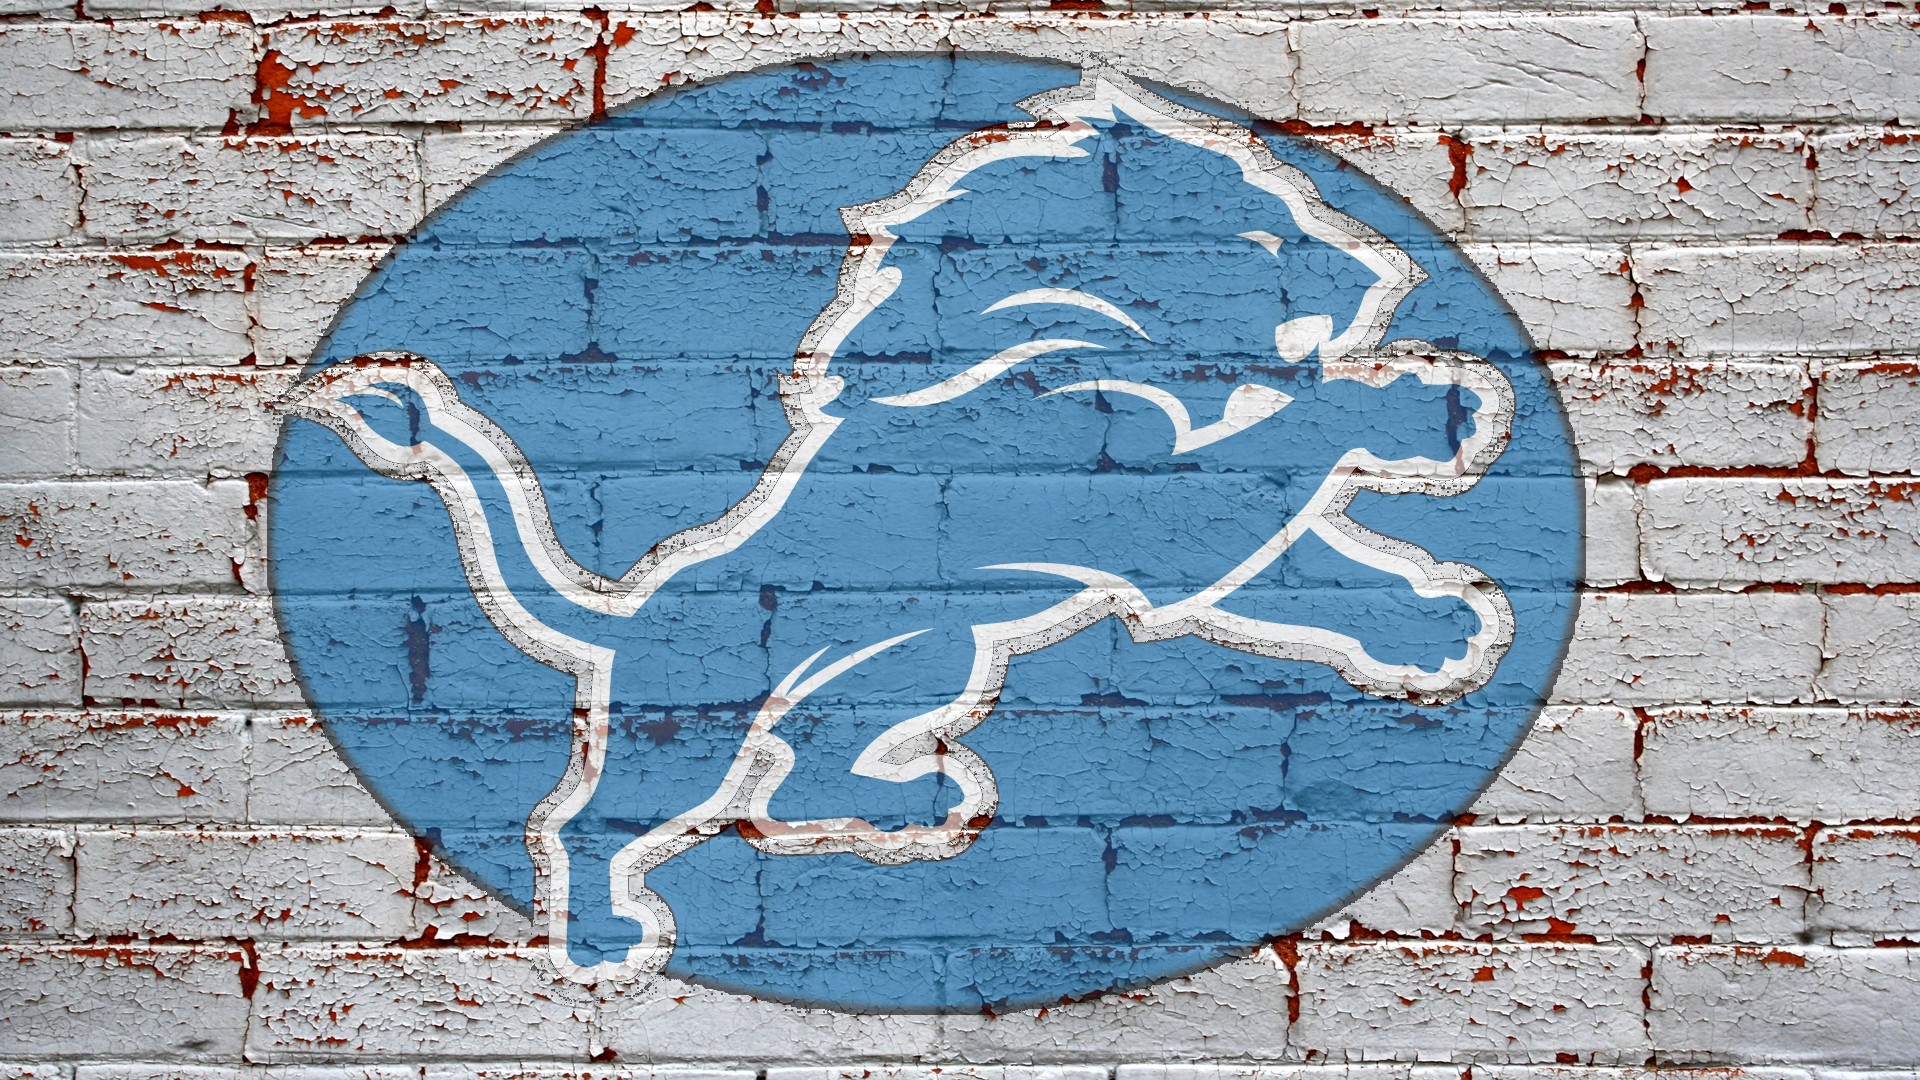 Detroit Lions Images Download Free | PixelsTalk Net